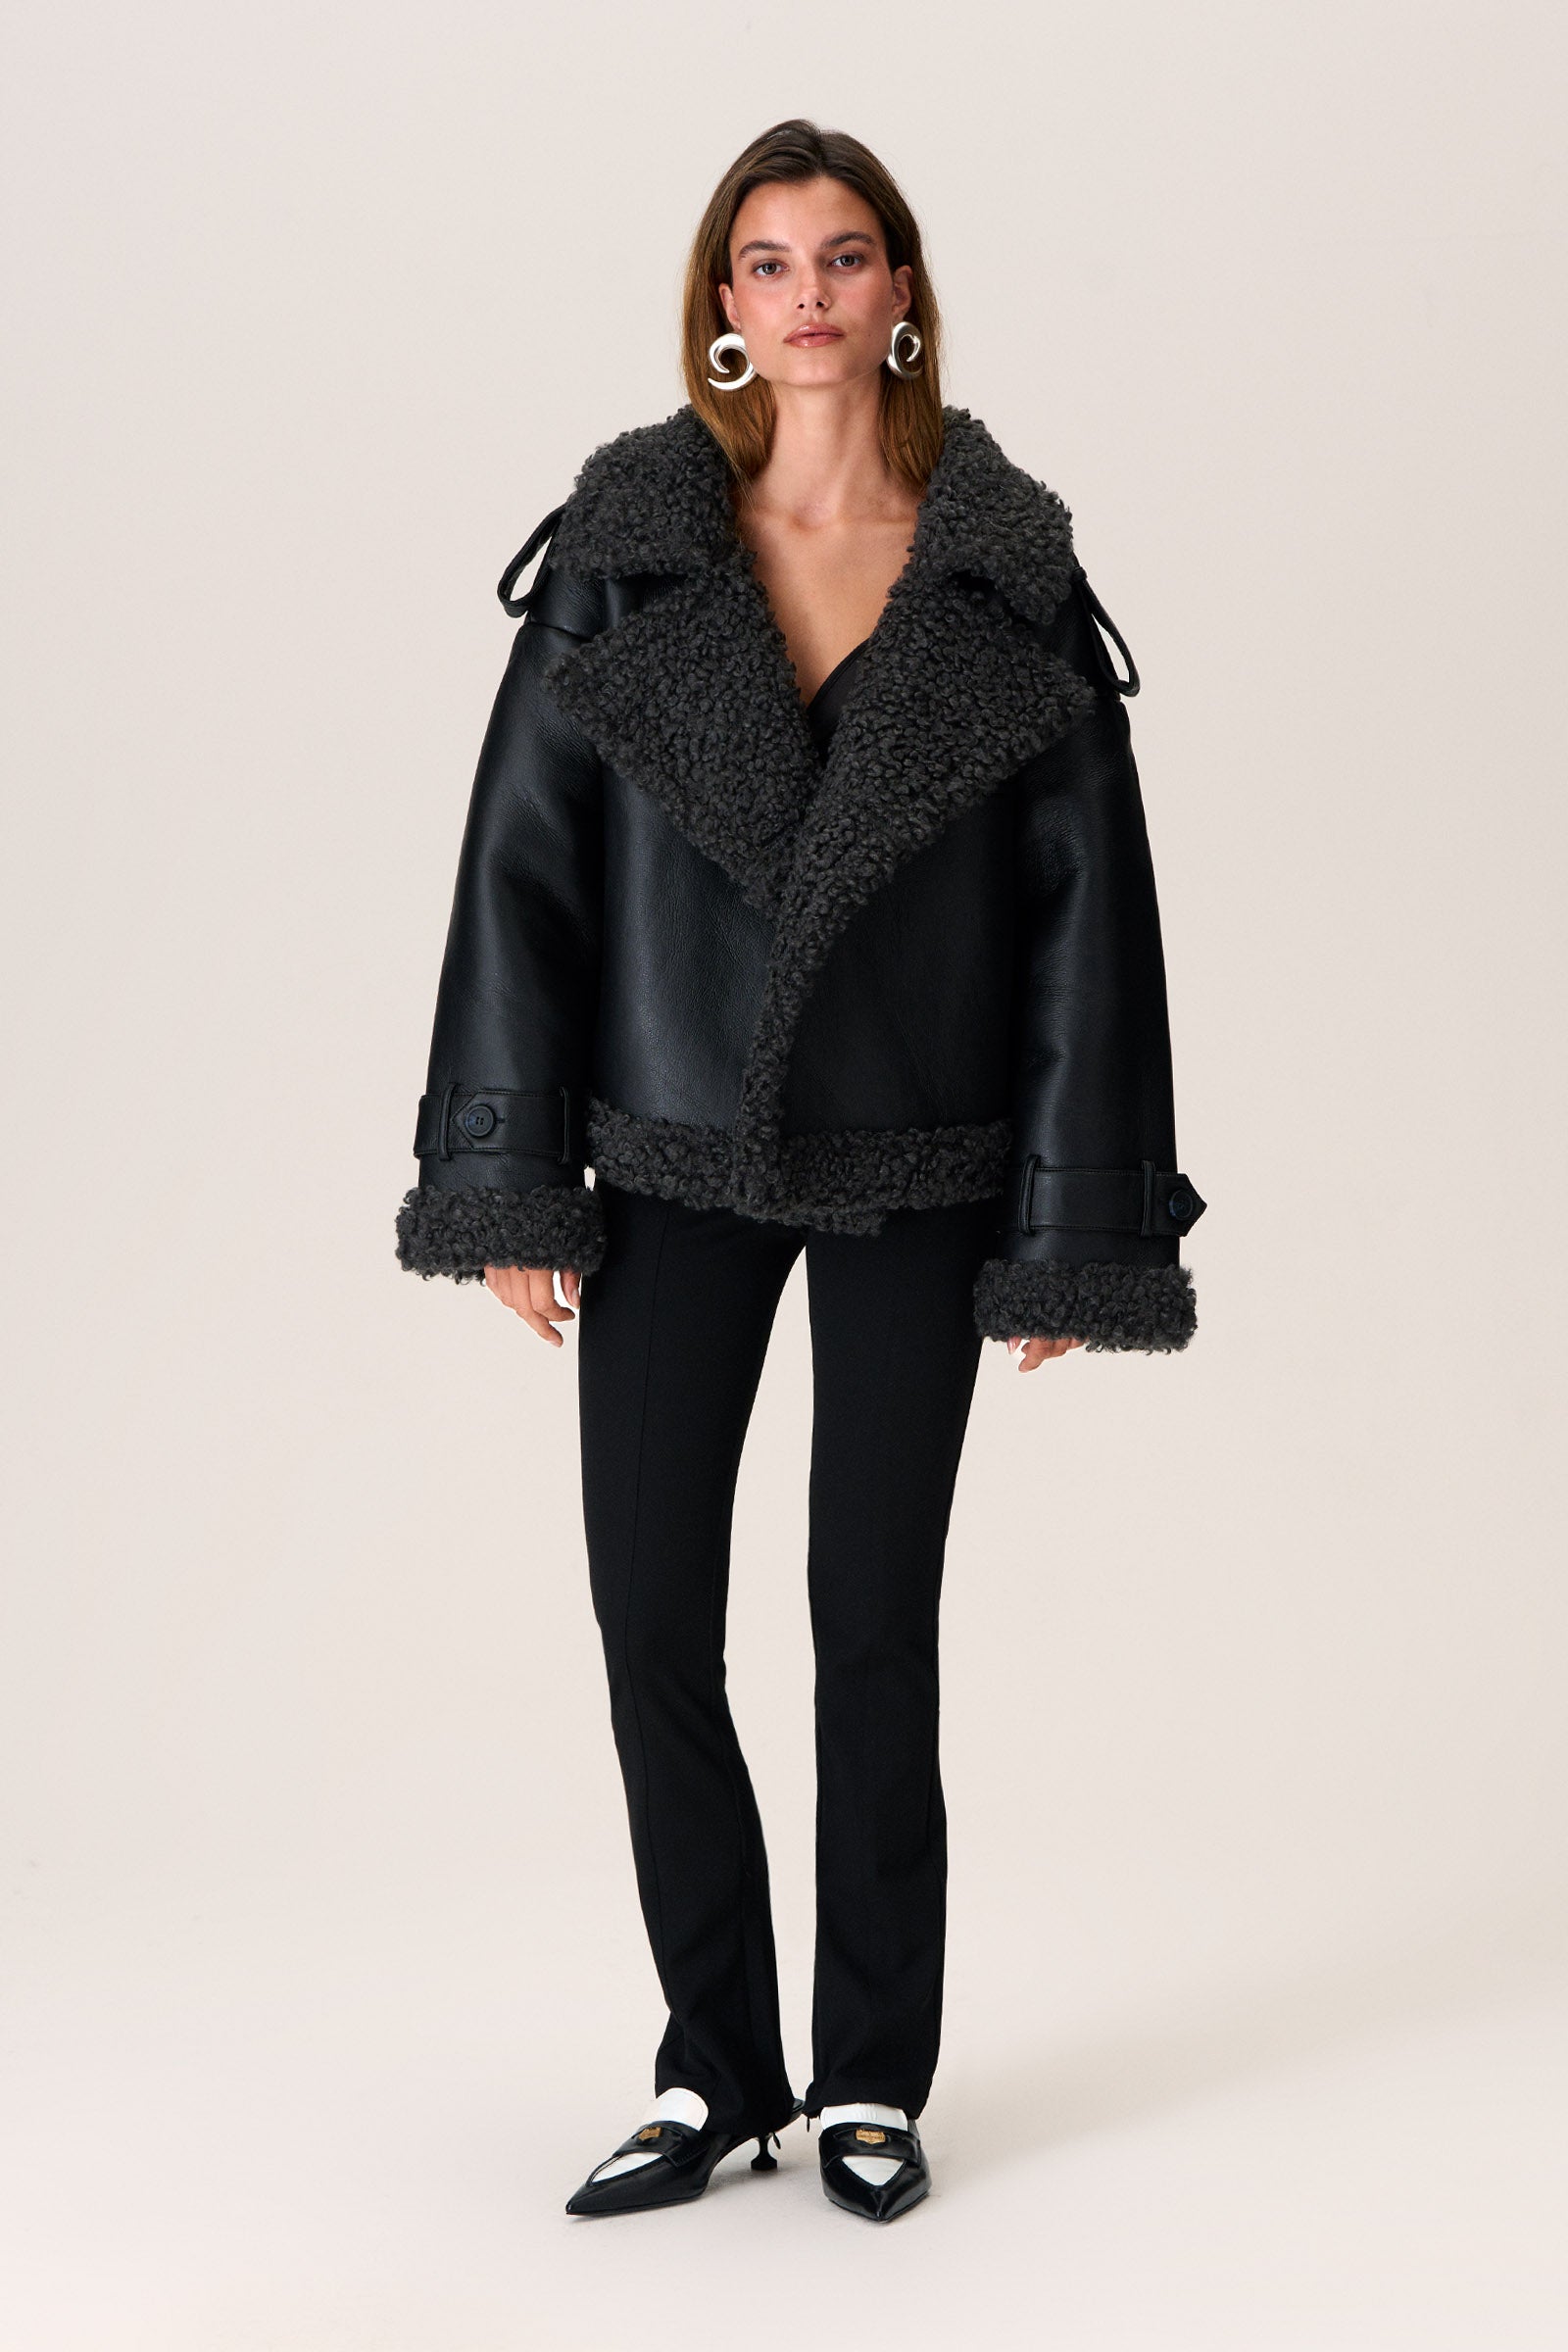 Vegan leather jacket in black – Shop jacket – adoore.se